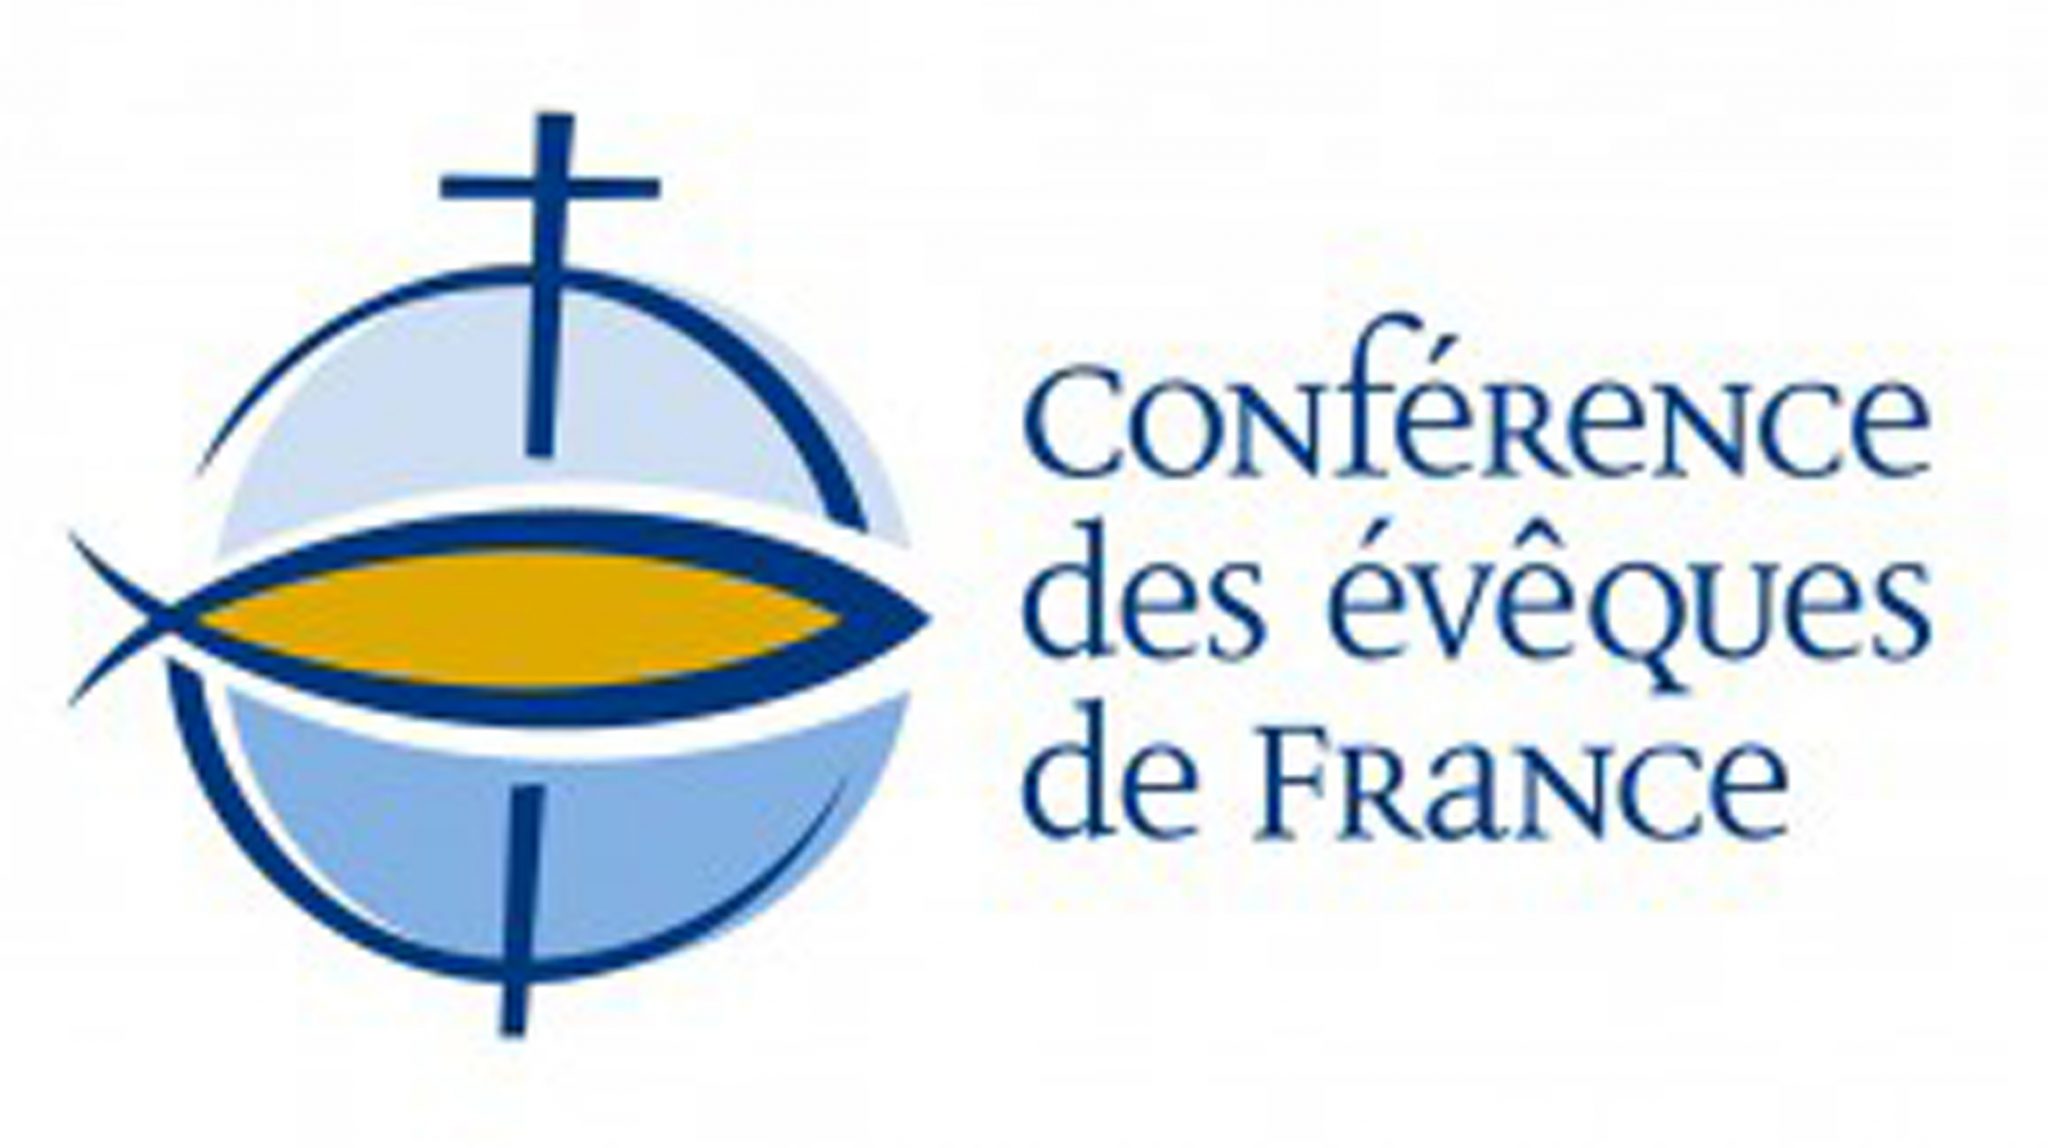 Kết quả hình ảnh cho conférence des évêques de france